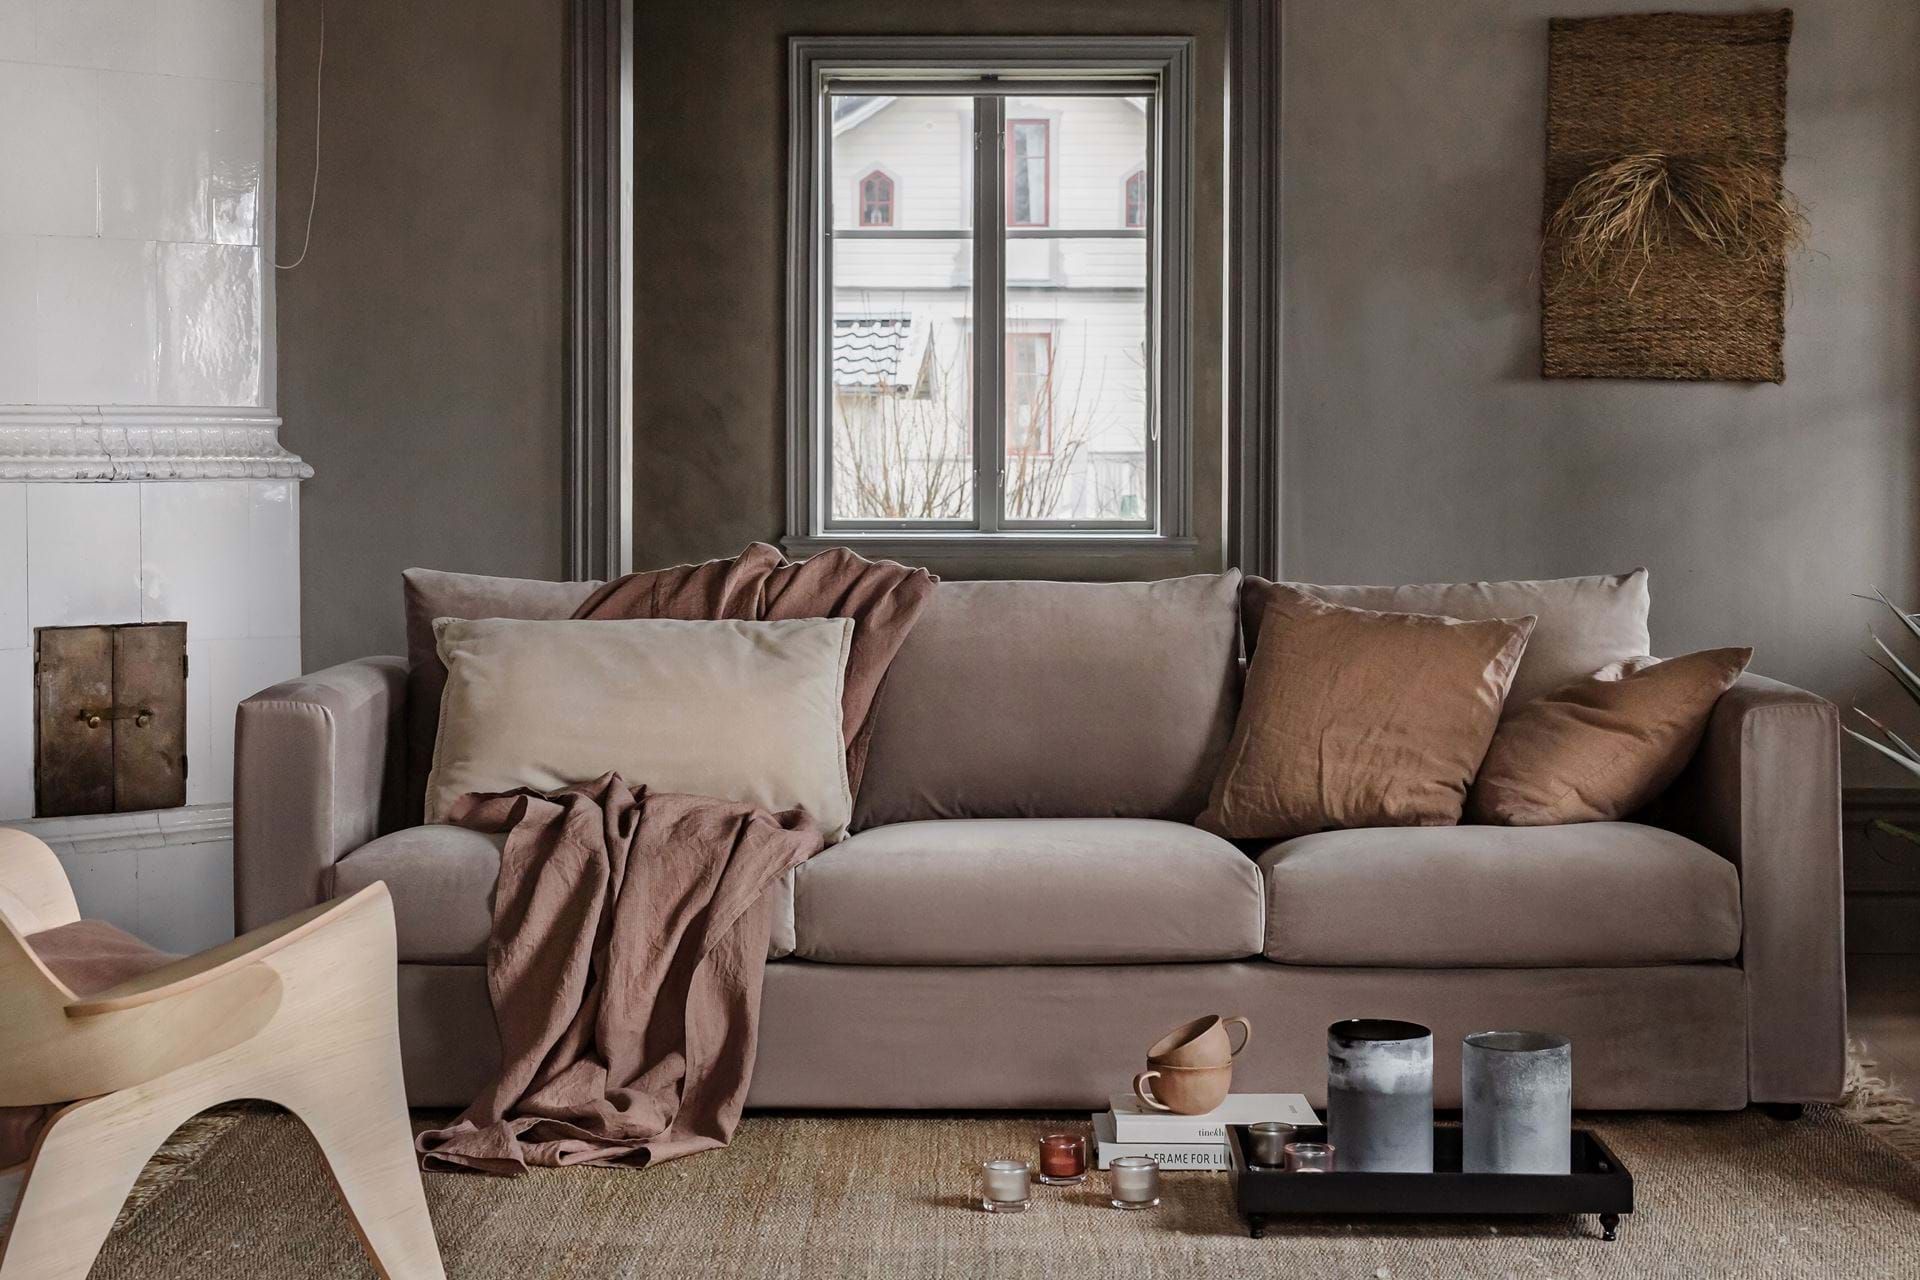 Được đánh giá bởi Bemz, Vimle sofa IKEA là một sản phẩm hoàn hảo cho không gian sống hiện đại của bạn. Sản phẩm này được làm bằng chất liệu vải cao cấp và có thể được tân trang lại để phù hợp với mọi phong cách trang trí nội thất. Sản phẩm Vimle của IKEA mang lại sự thoải mái đến bạn từ những ngày đầu sử dụng.